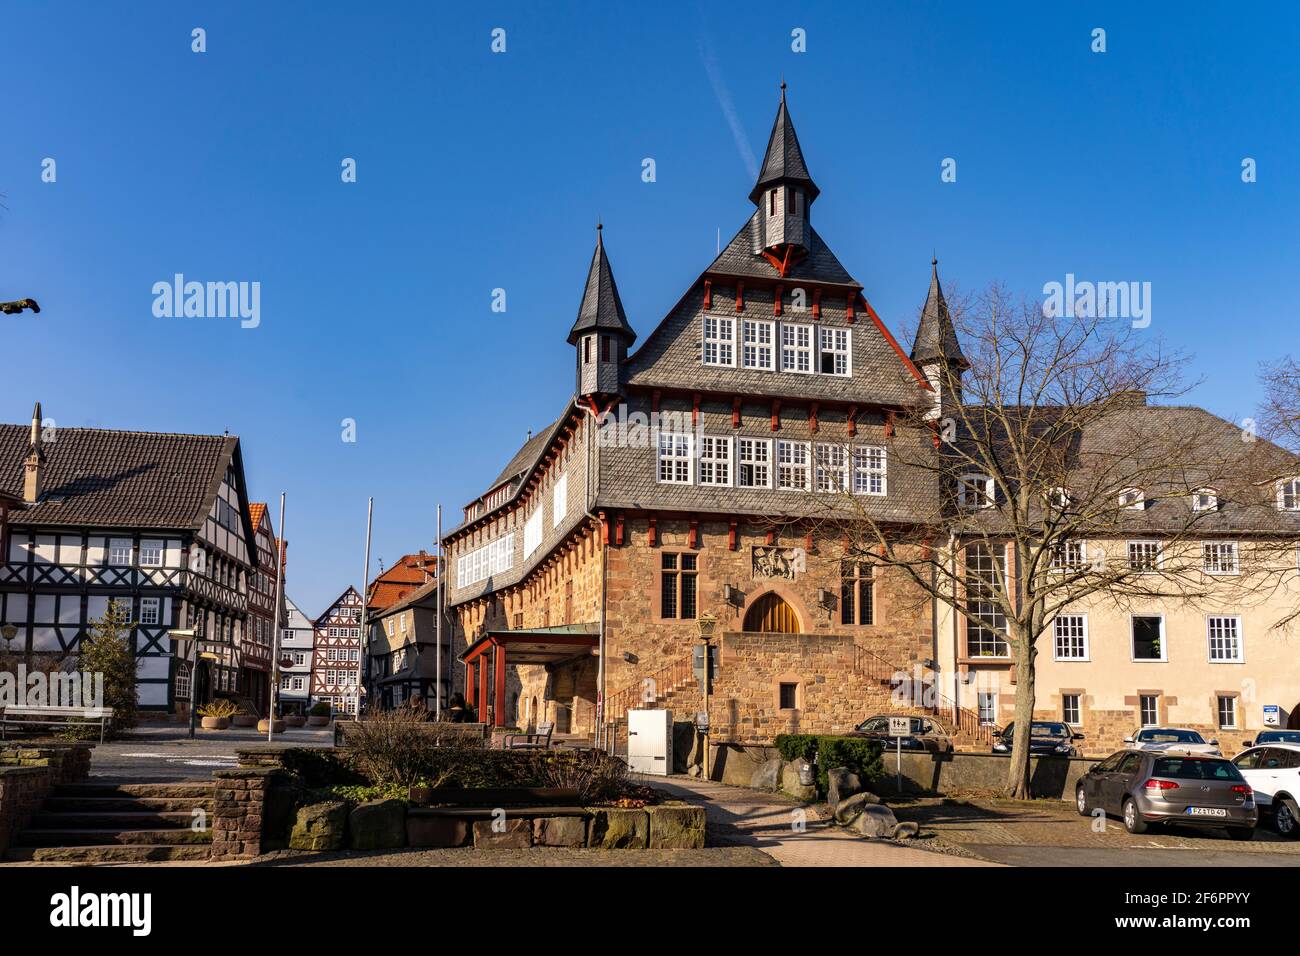 Das Rathaus in Fritzlar, Schwalm-Eder-Kreis, Hessen, Deutschland   |   Fritzlar Town Hall, Schwalm-Eder district, Hesse, Germany Stock Photo